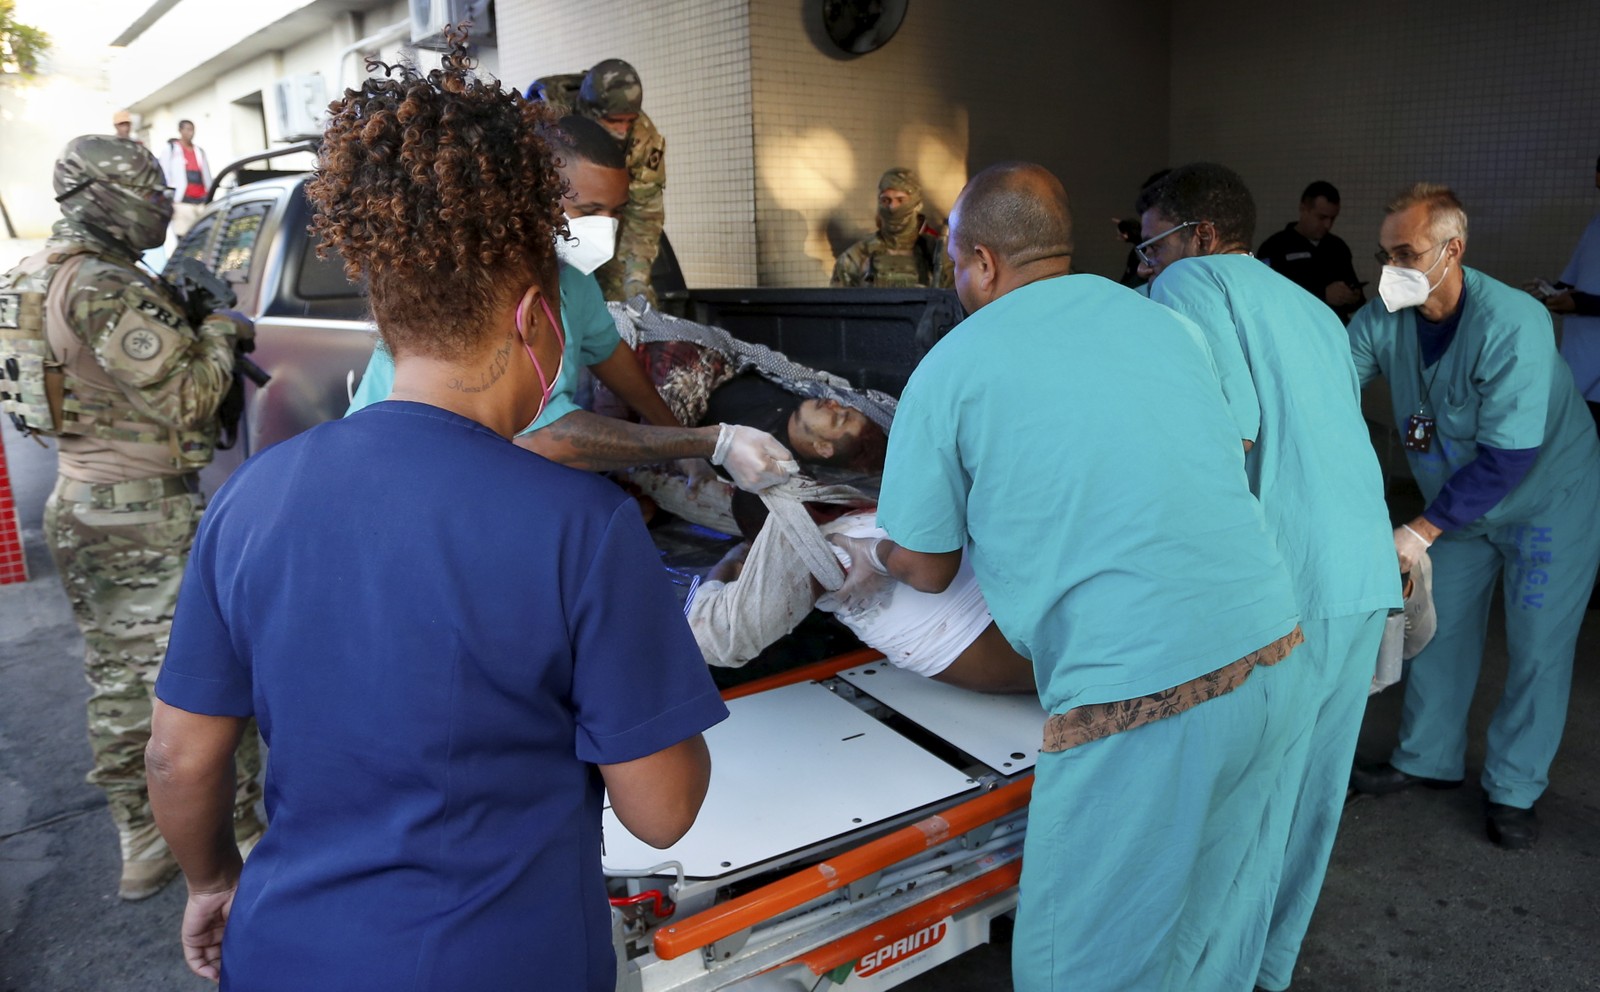 Feridos chegam levados na caçamba de viatura da PM ao Hospital Getúlio Vargas, na Penha.  — Foto: Fabiano Rocha/Agência O Globo